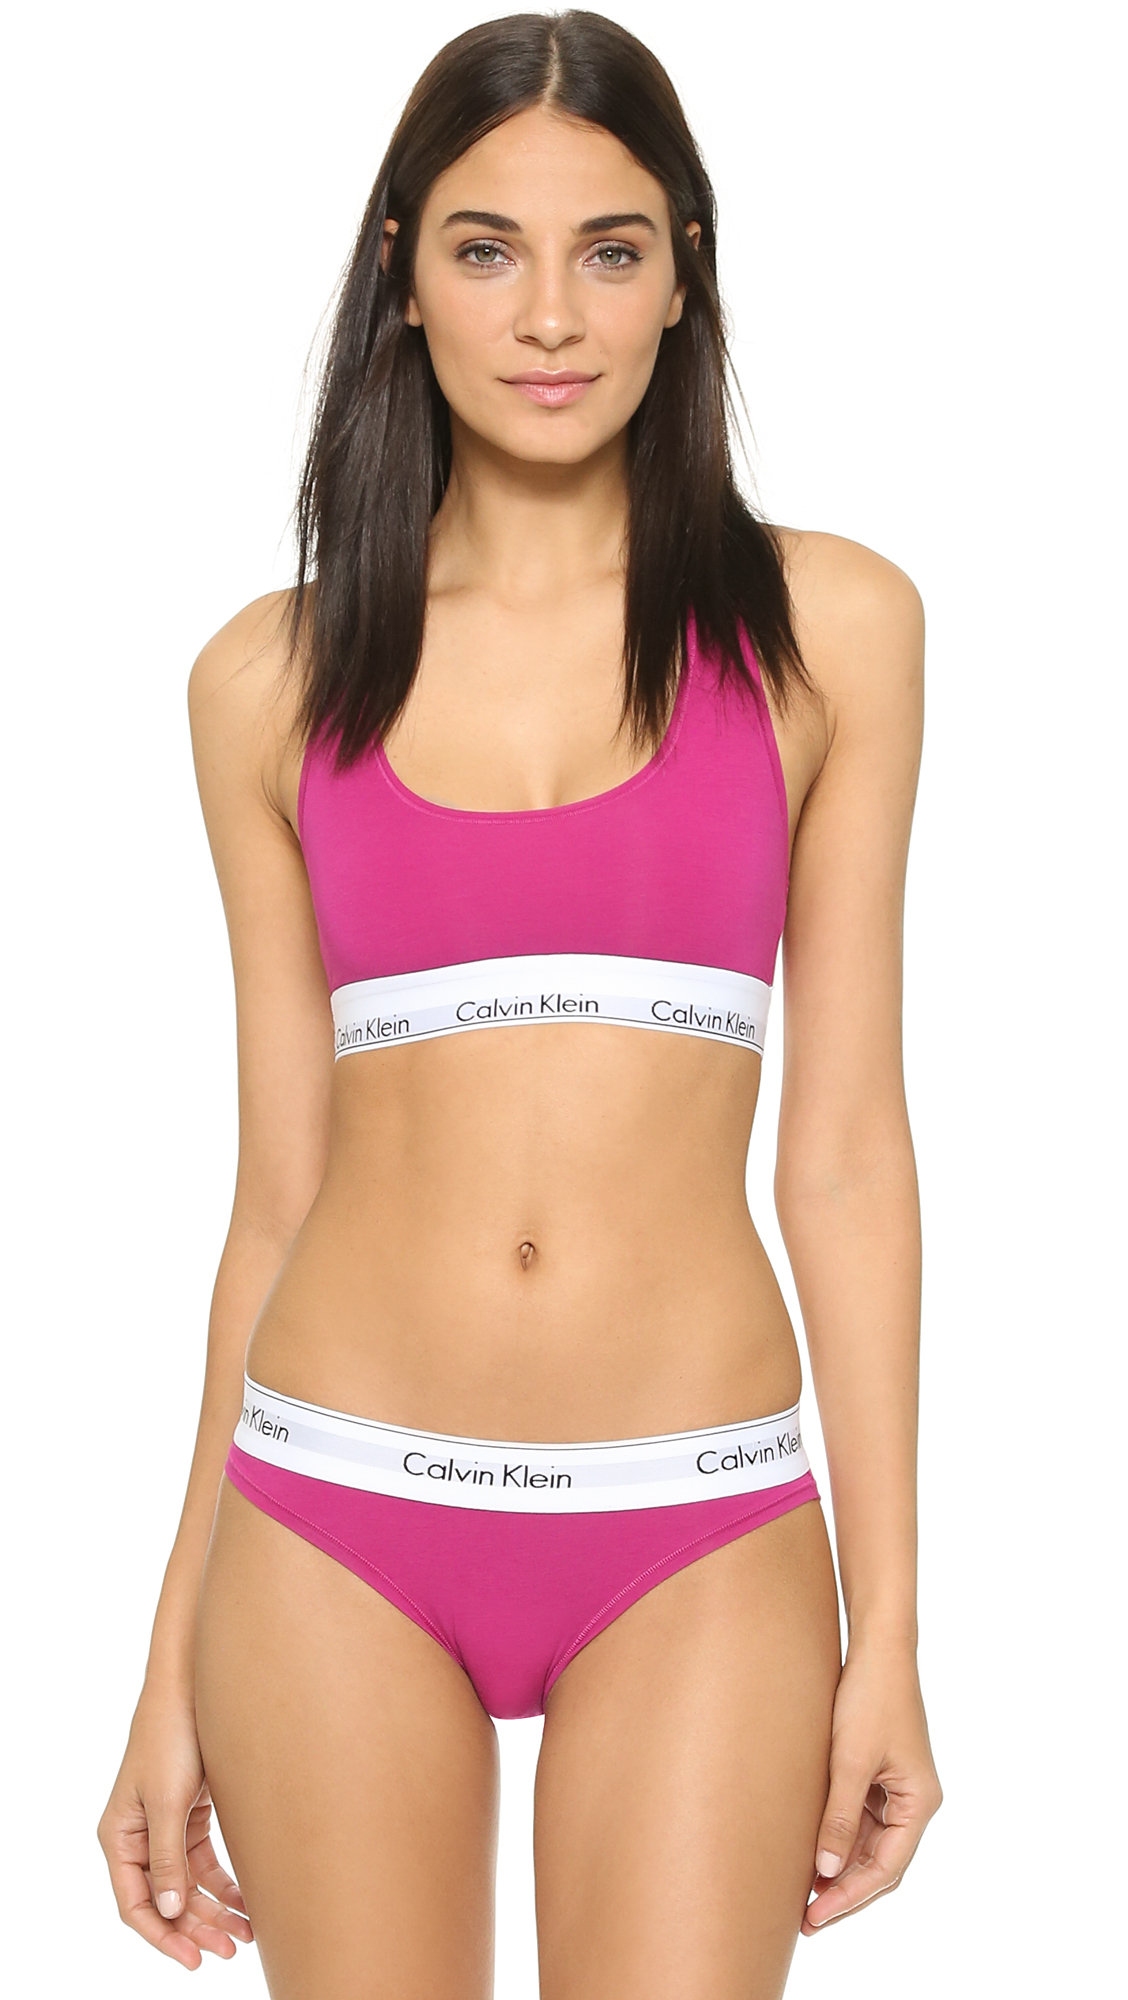 https://cdna.lystit.com/photos/6a37-2015/09/04/calvin-klein-underwear-pink-desire-modern-cotton-bralette-pink-desire-product-1-148429209-normal.jpeg